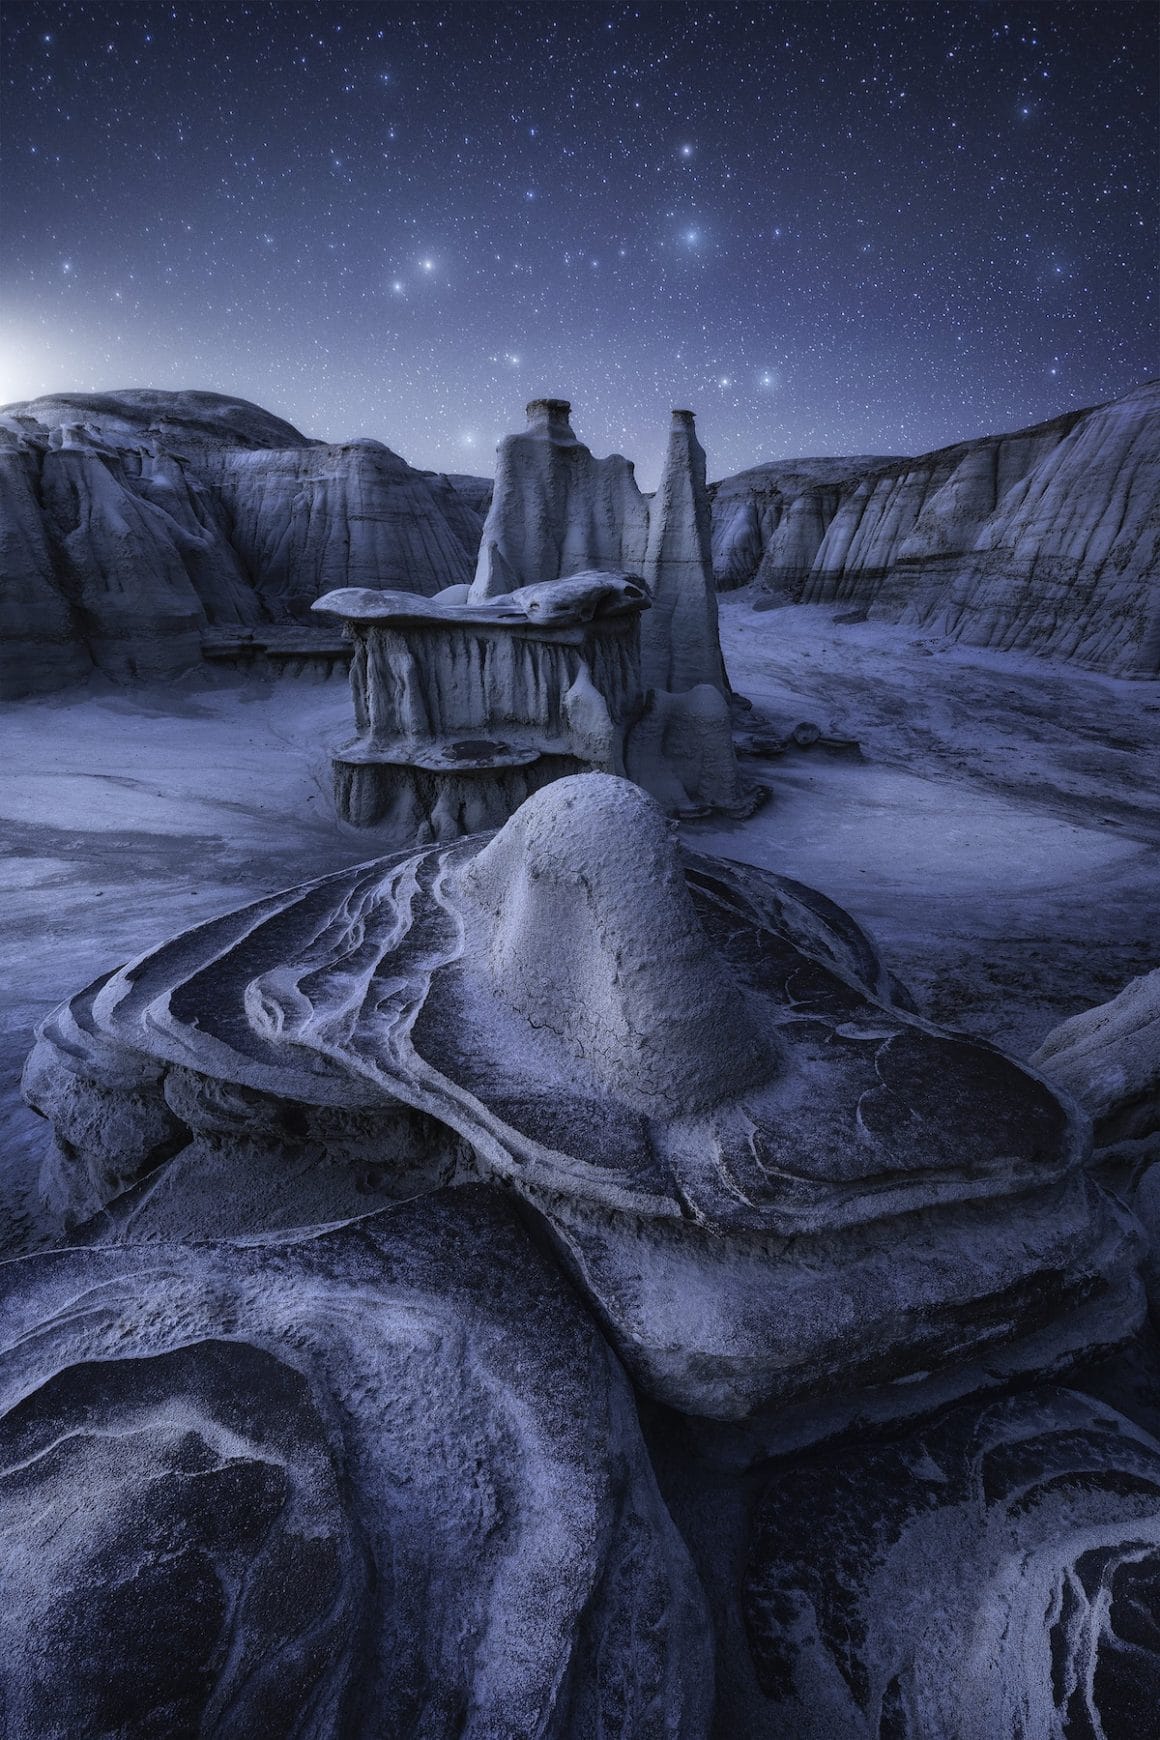 Un cliché intergalactique de Joshua Snow, sacré deuxième meilleur photographe de paysage de l'année